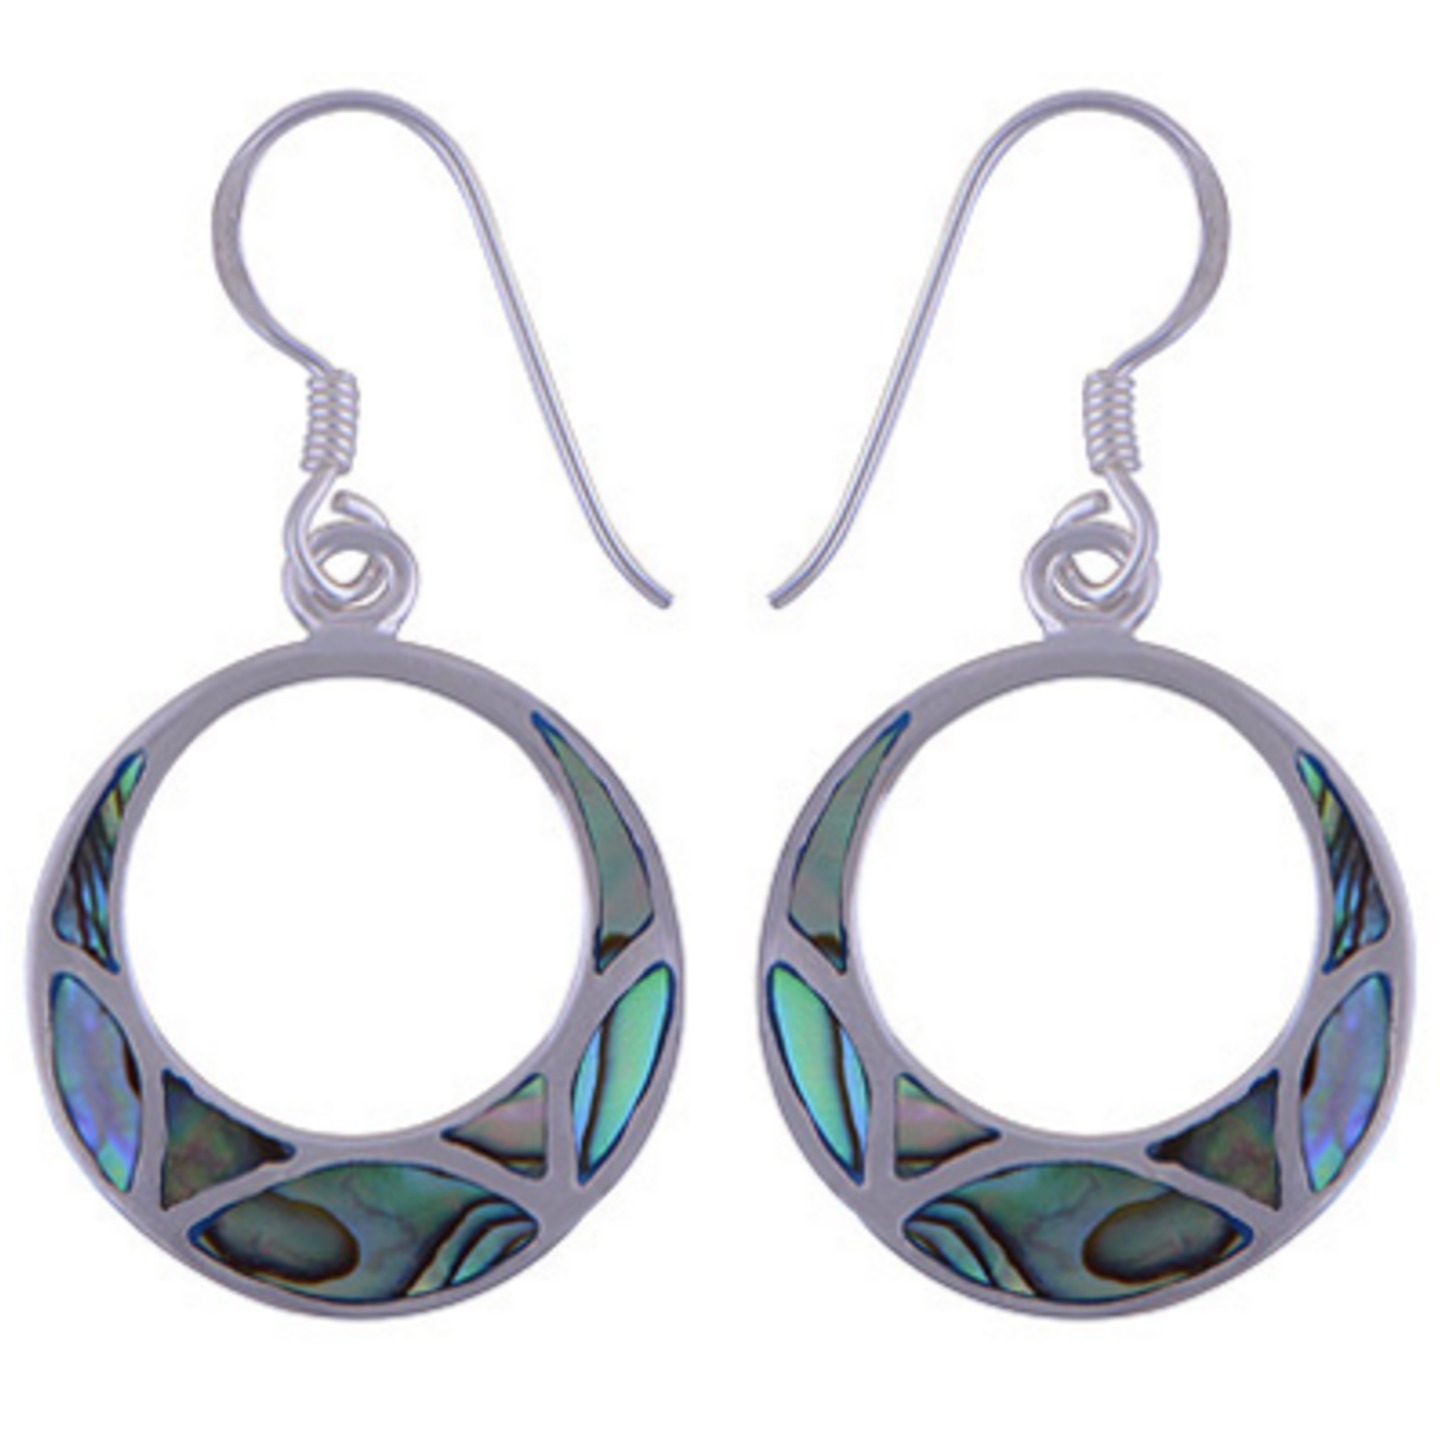 The Abalone Dangler silver Earring